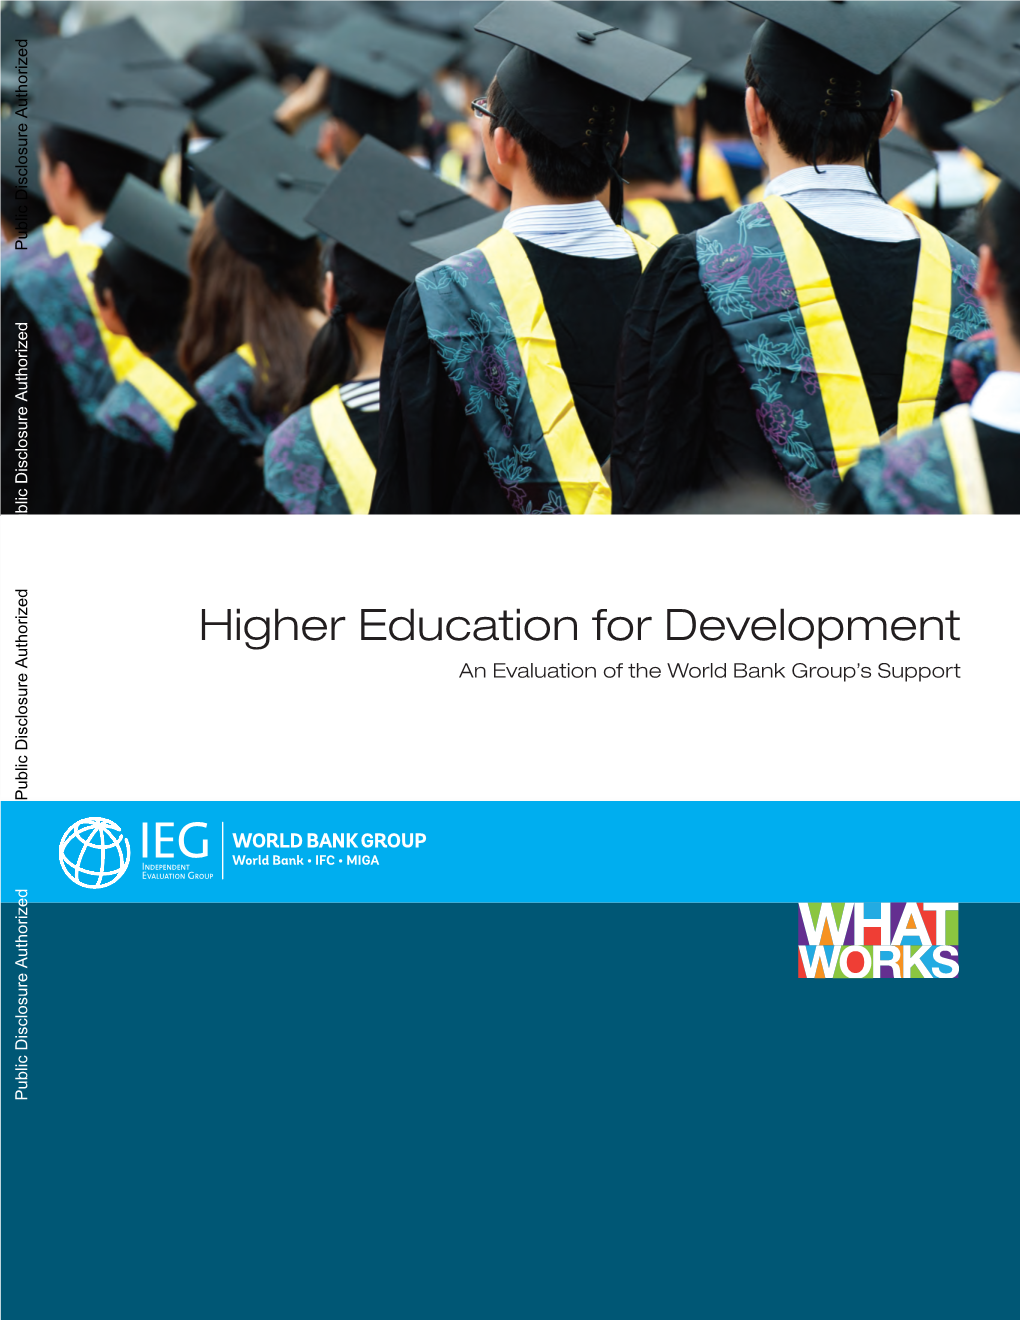 Higher Education for Development